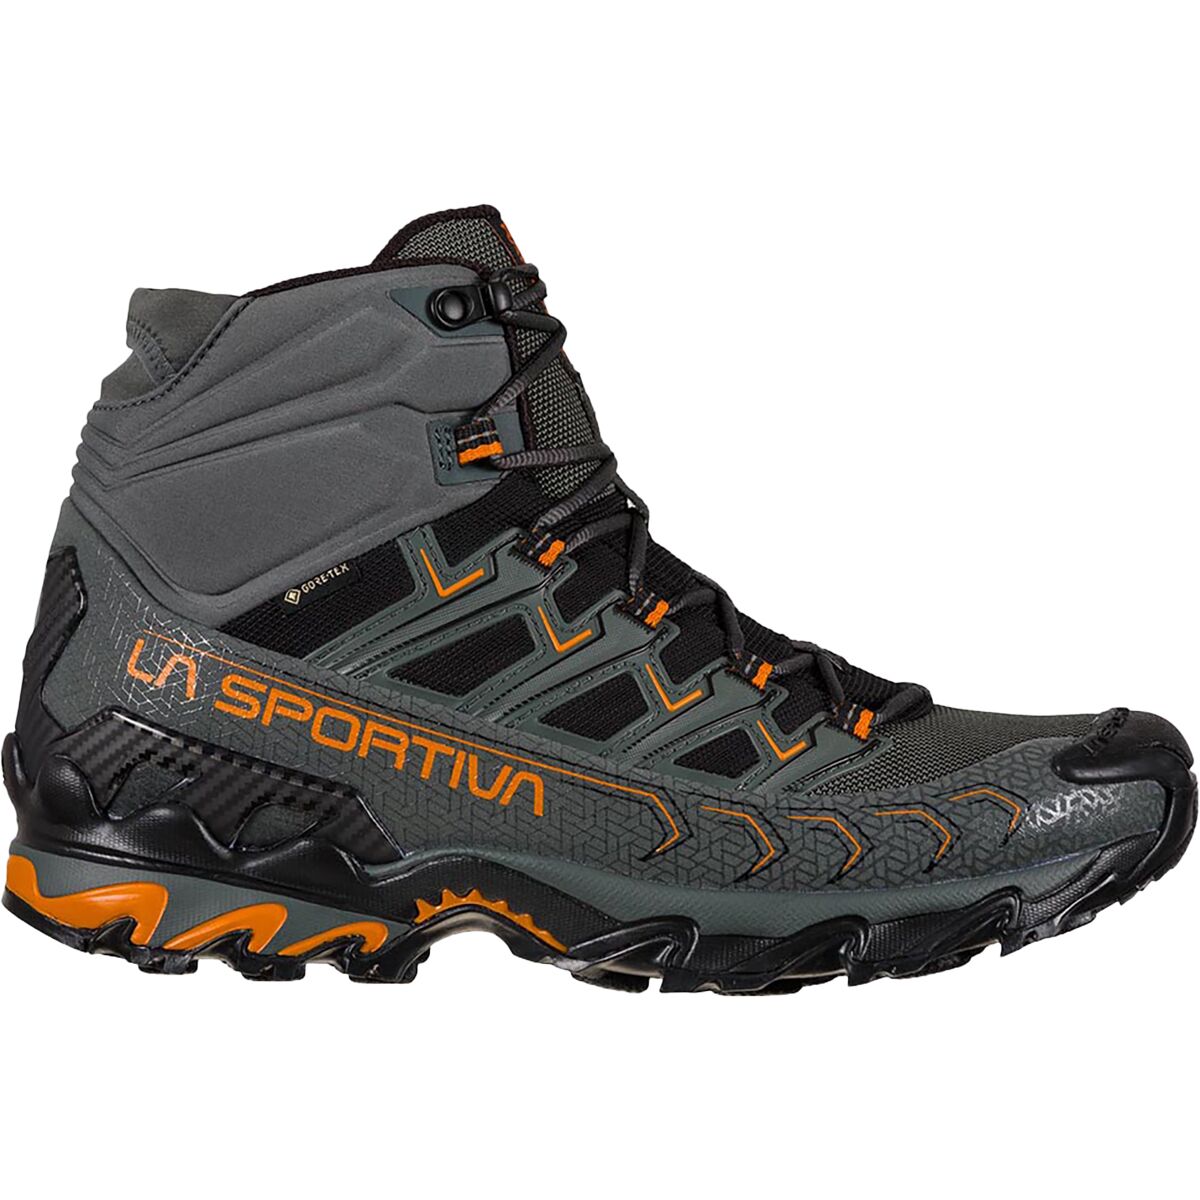 La Sportiva Ultra Raptor II Mid GTX Wide Hiking Boot - Men's